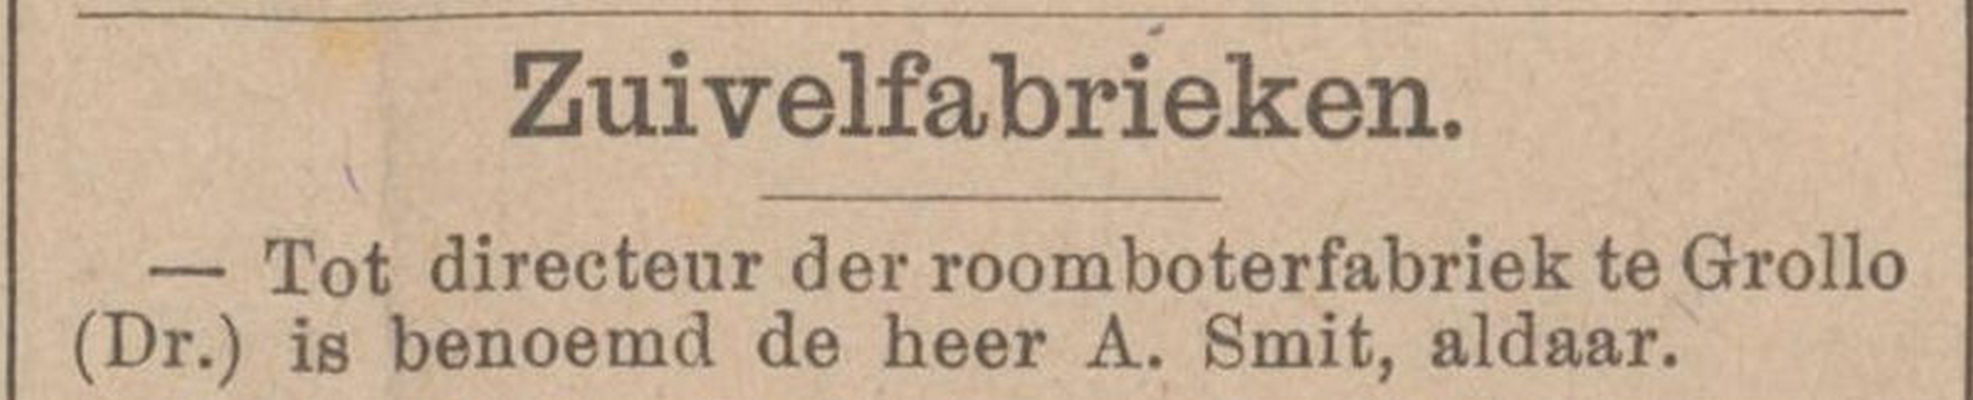 18990307 krant Nederlandsch weekblad voor zuivelbereiding en veeteelt directeur zuivelfabriek